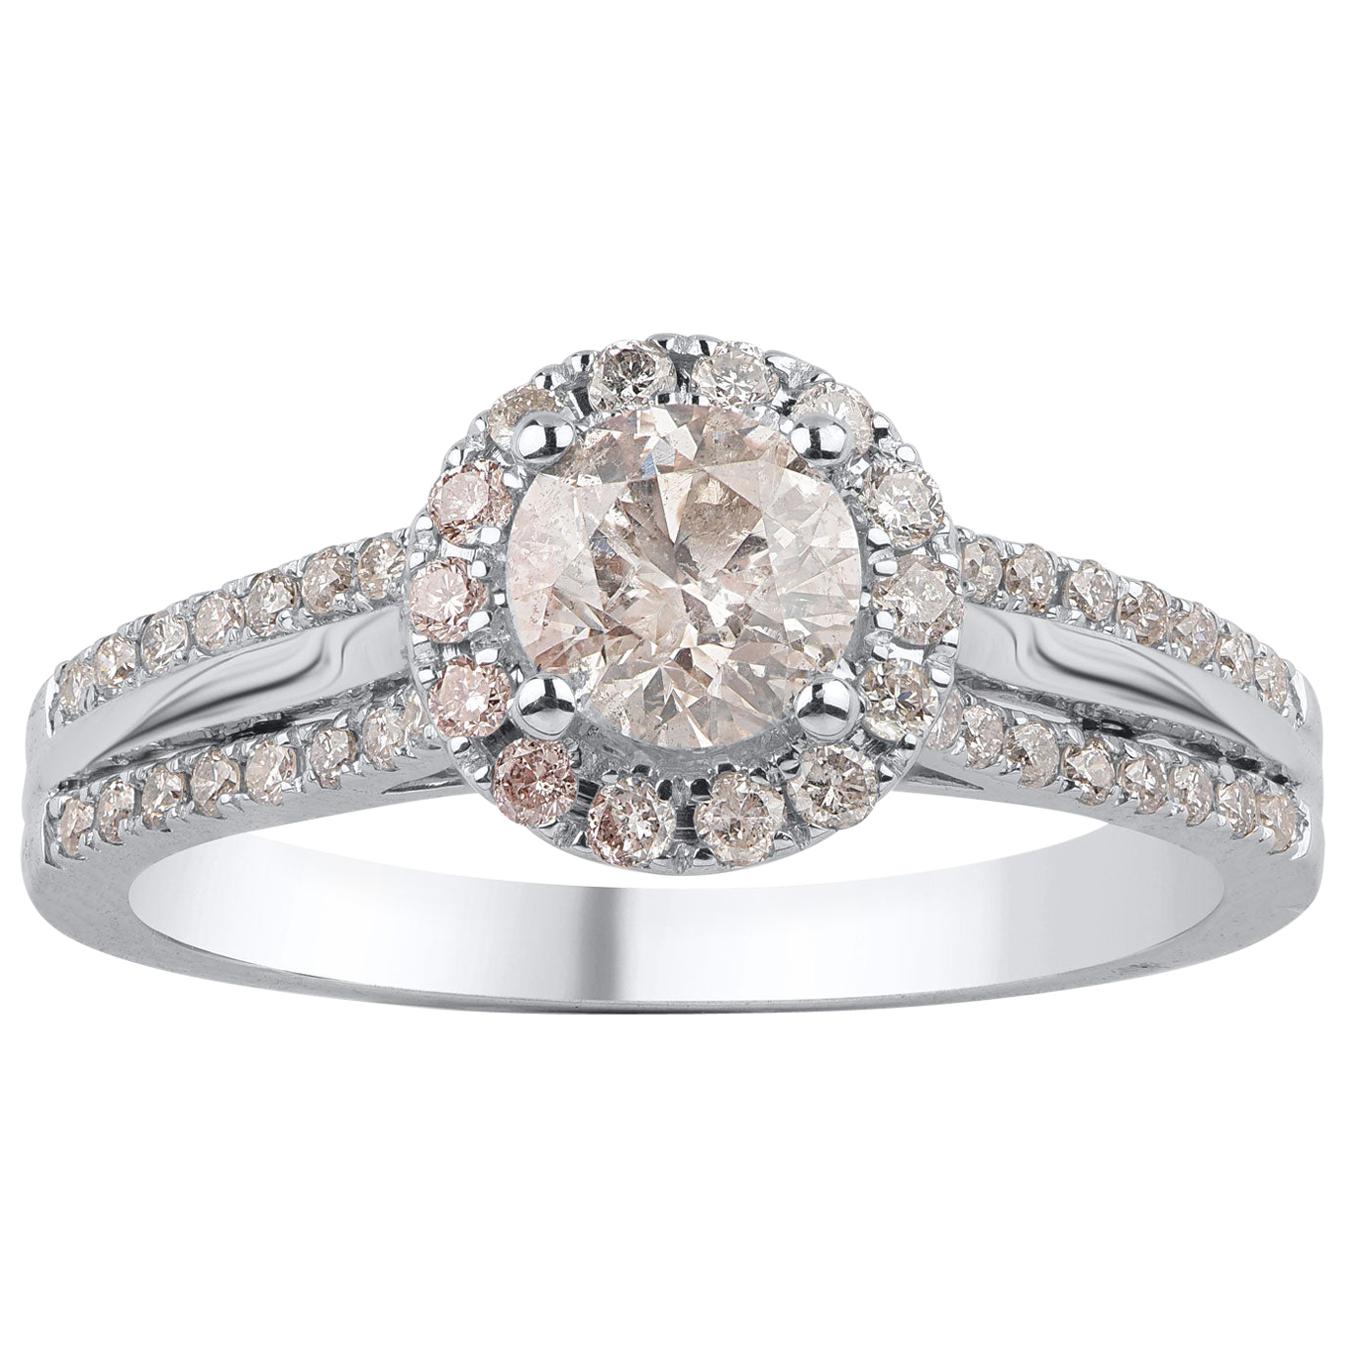 TJD 1.00 Carat Round Diamond 18 Karat White Gold Enchanting Halo Engagement Ring For Sale